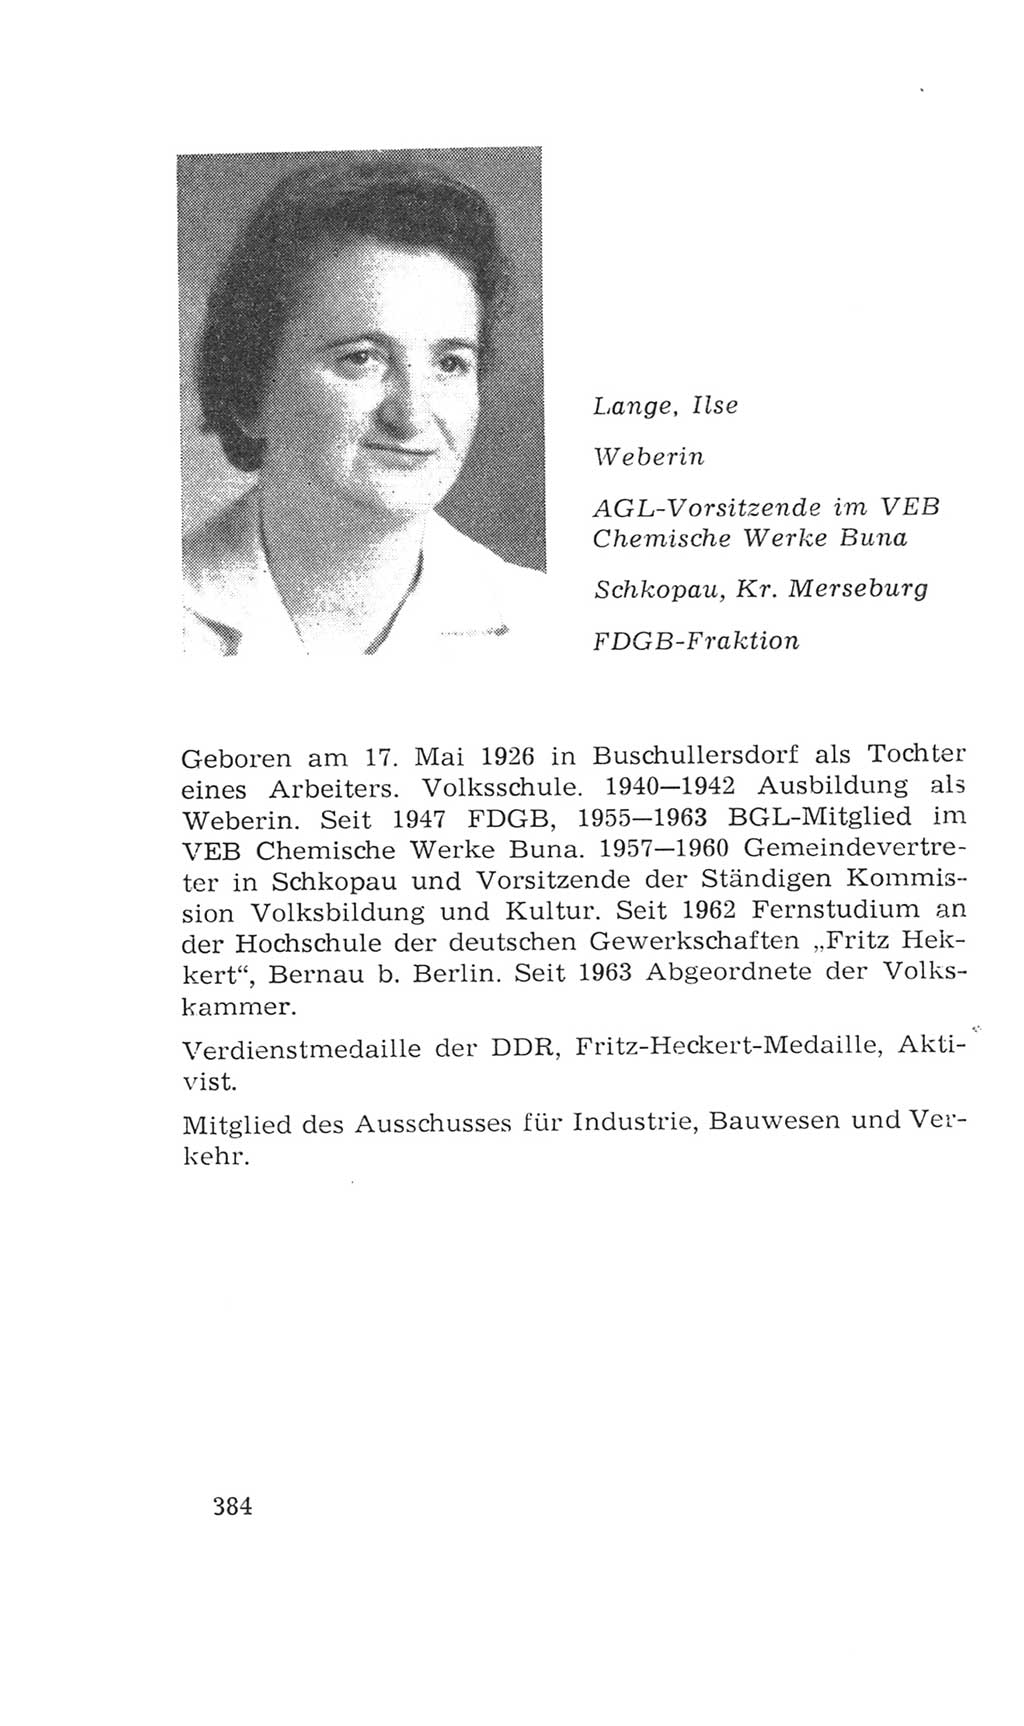 Volkskammer (VK) der Deutschen Demokratischen Republik (DDR), 4. Wahlperiode 1963-1967, Seite 384 (VK. DDR 4. WP. 1963-1967, S. 384)